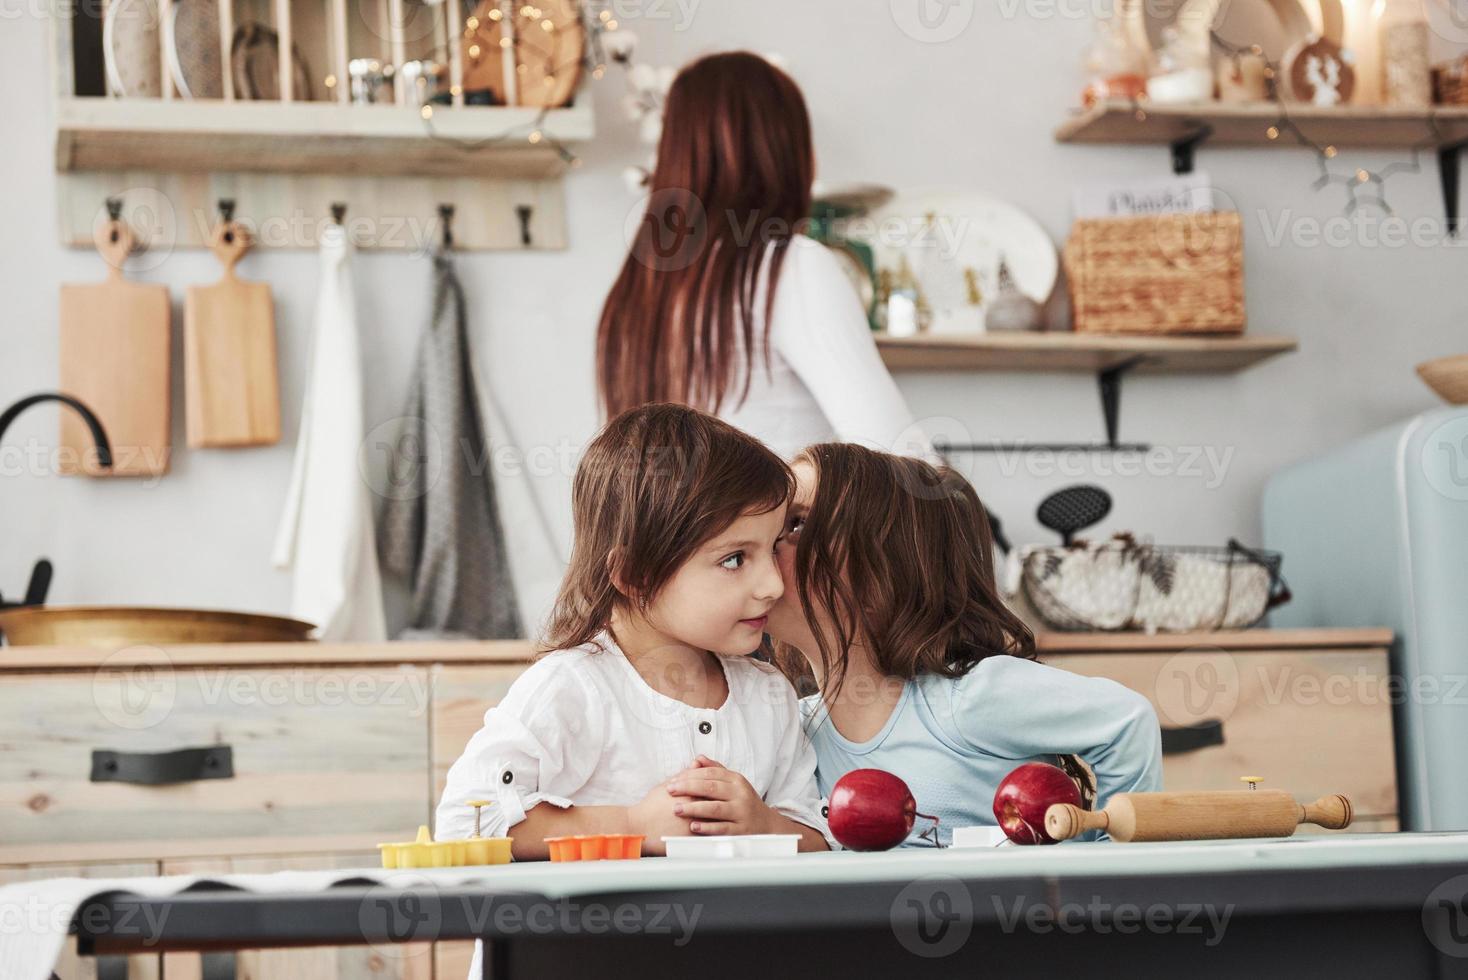 kinderen zijn pratend heimelijk naar elk andere in de keuken terwijl mam is voorbereidingen treffen avondeten foto